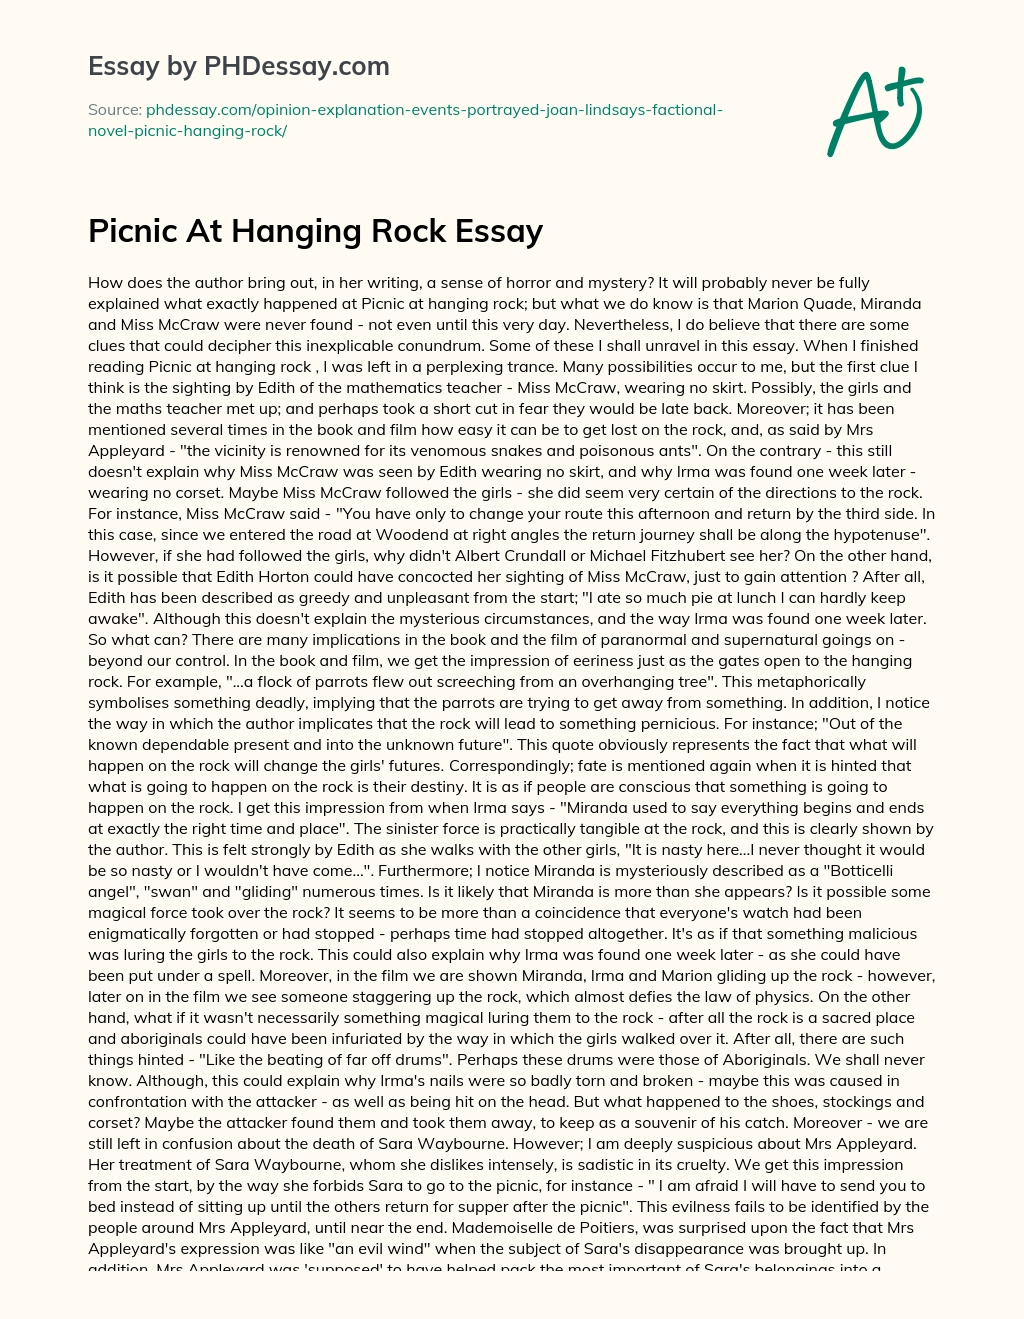 Picnic At Hanging Rock Essay essay